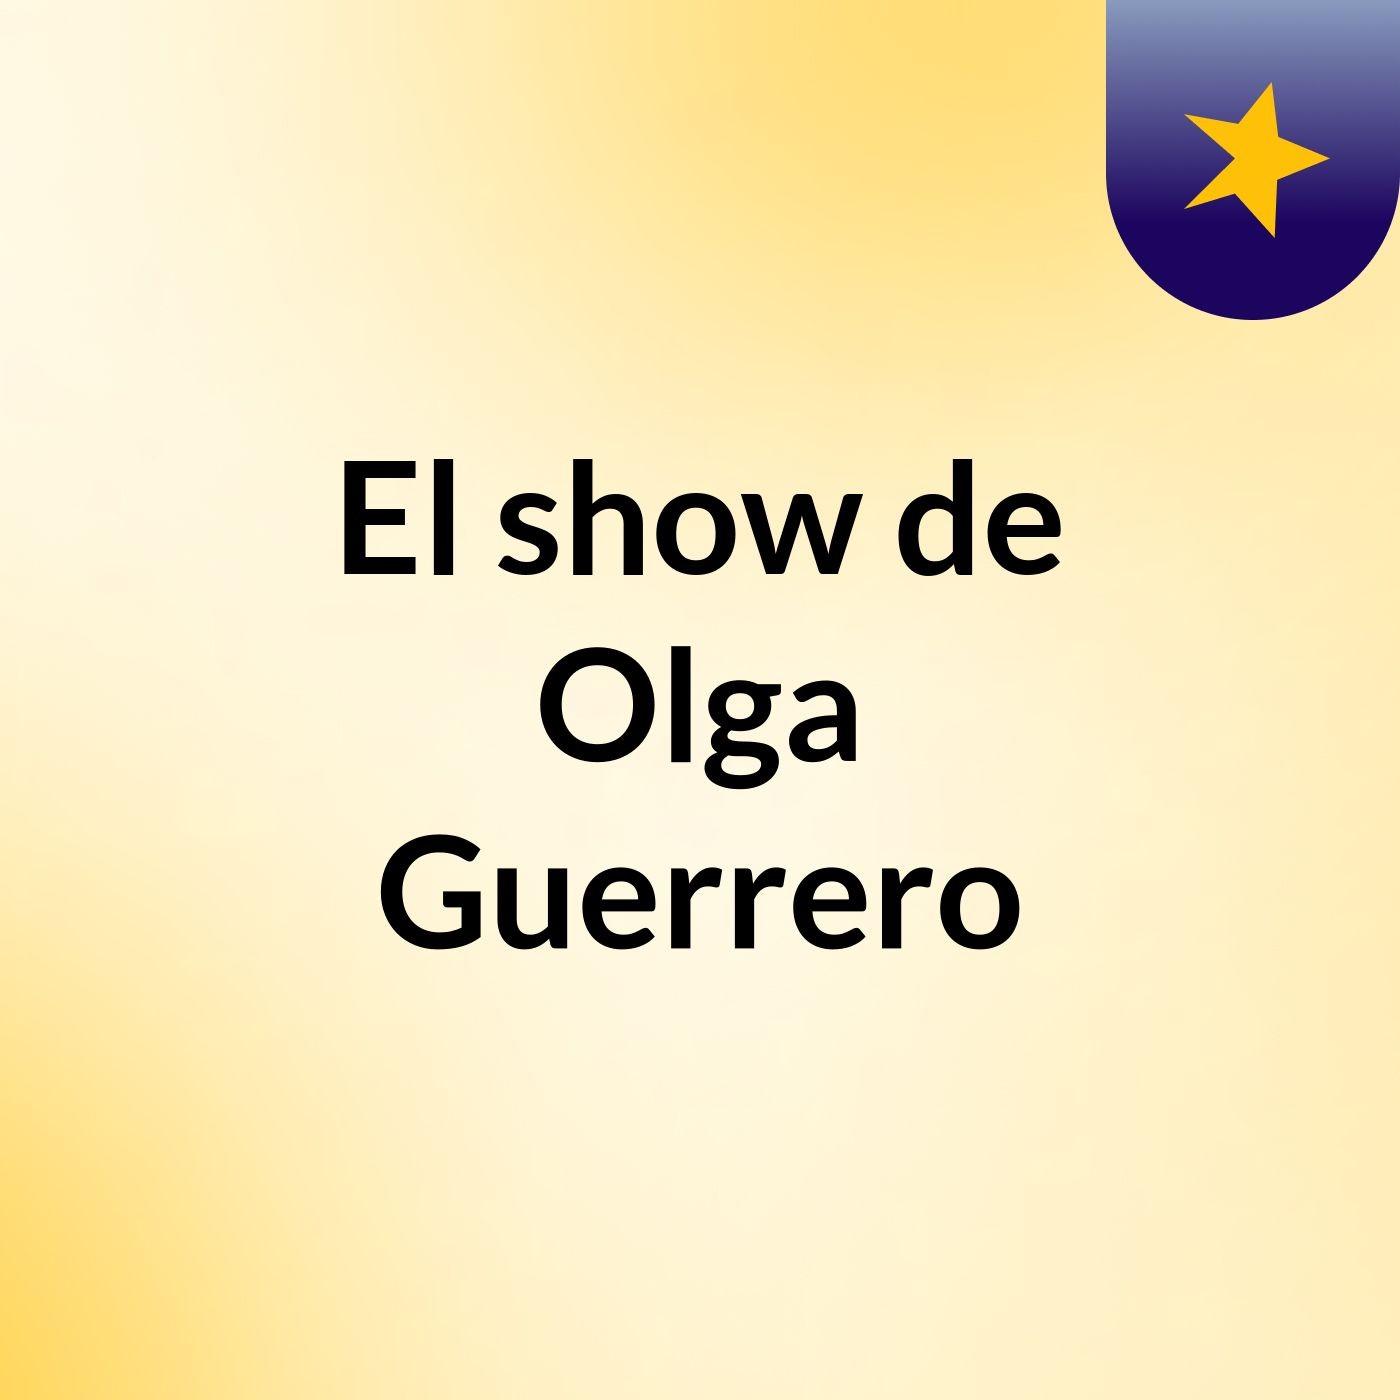 El show de Olga Guerrero